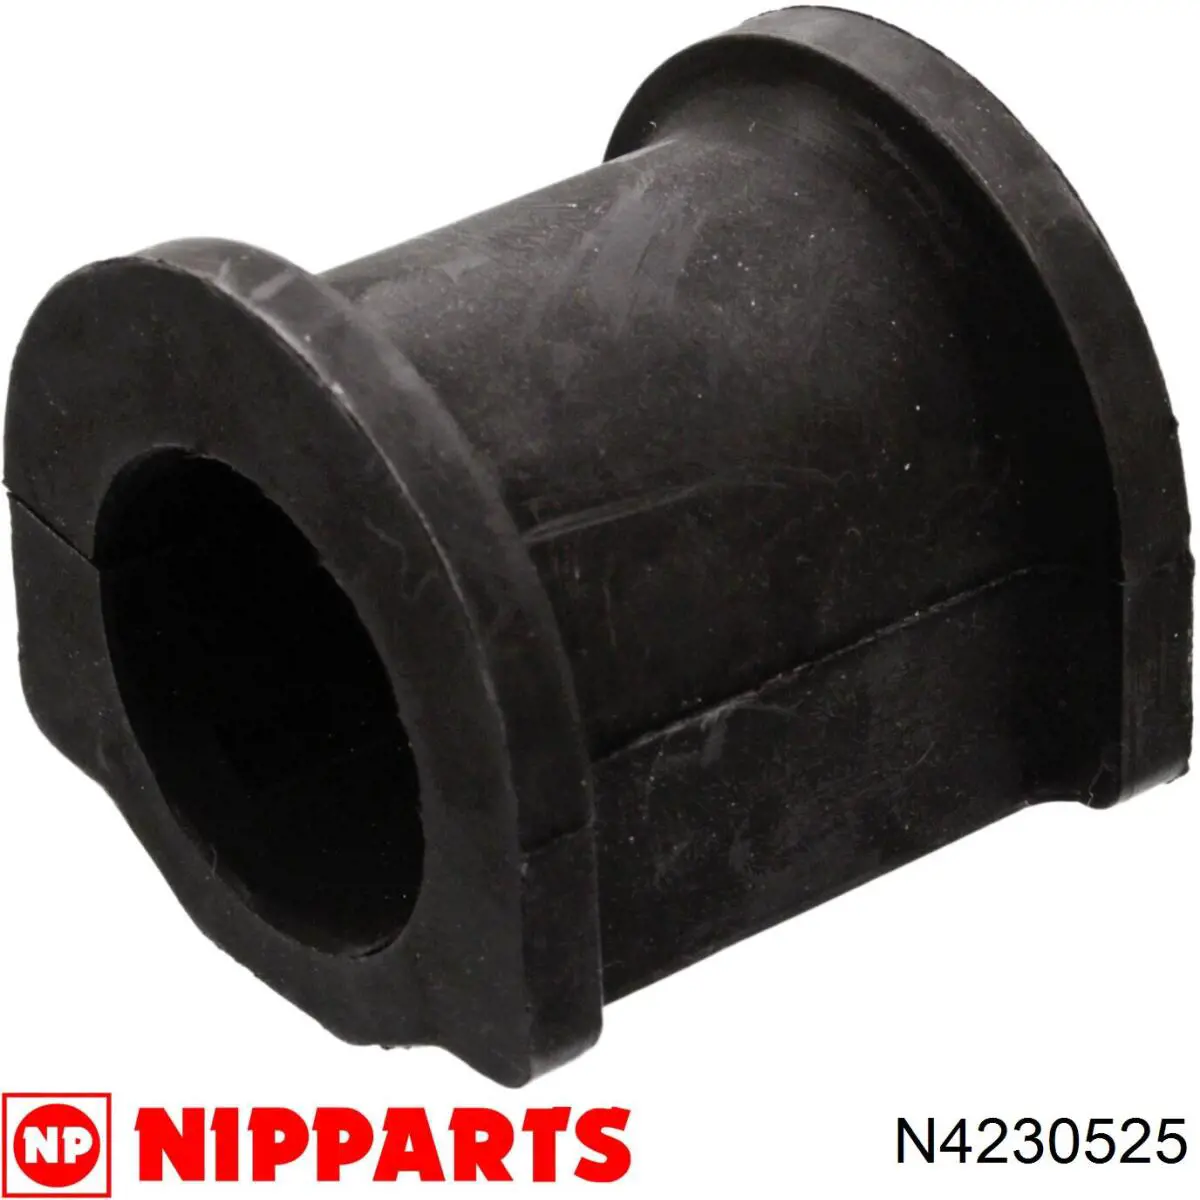 N4230525 Nipparts casquillo de barra estabilizadora delantera